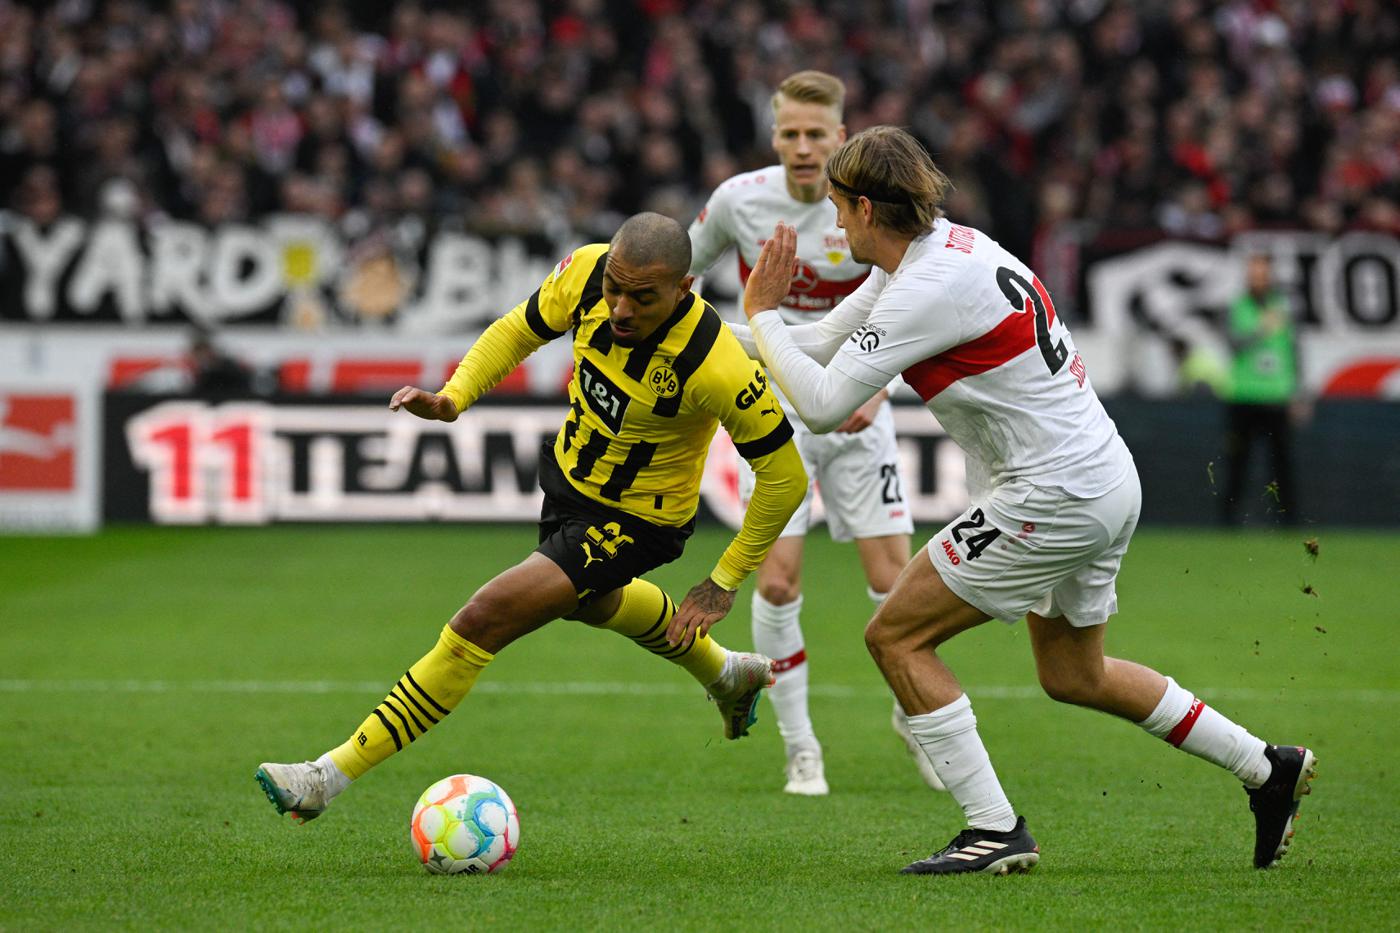 Stuttgart - Borussia D - 3:3. Deutsche Meisterschaft, 28. Runde. Spielbericht, Statistiken